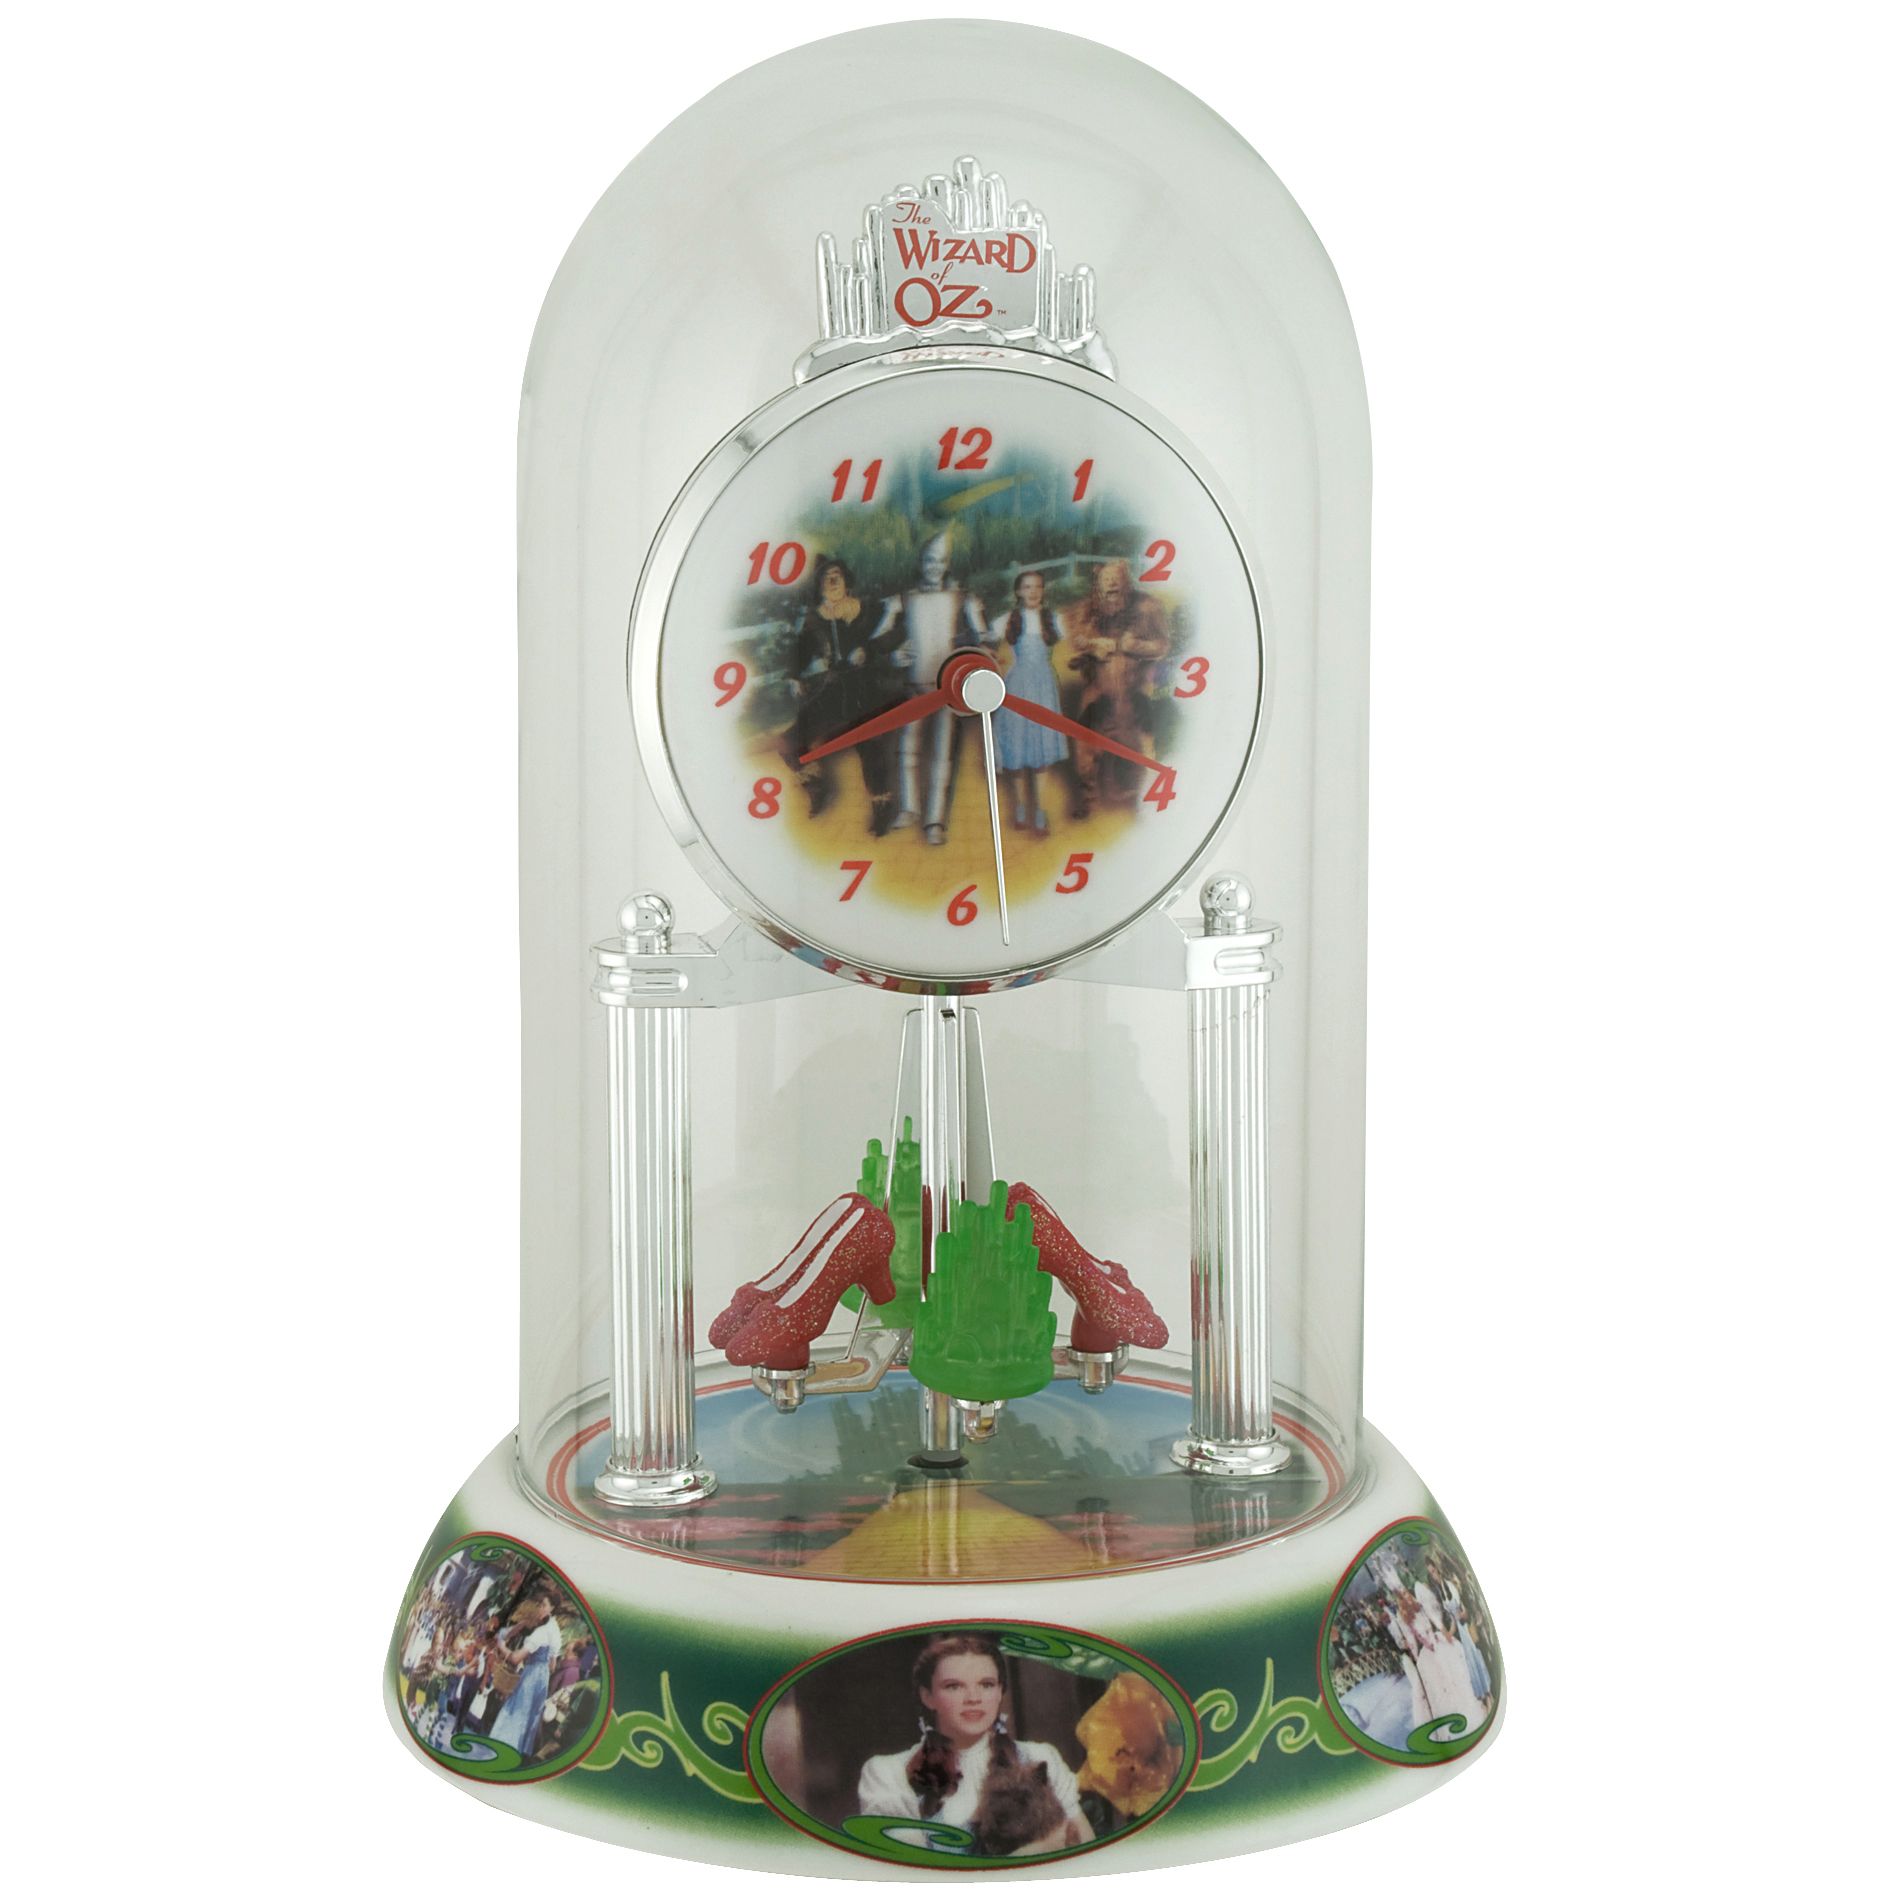 Wizard of Oz Anniversary Clock - Home - Home Decor - Decorative Accents -  Decorative Clocks